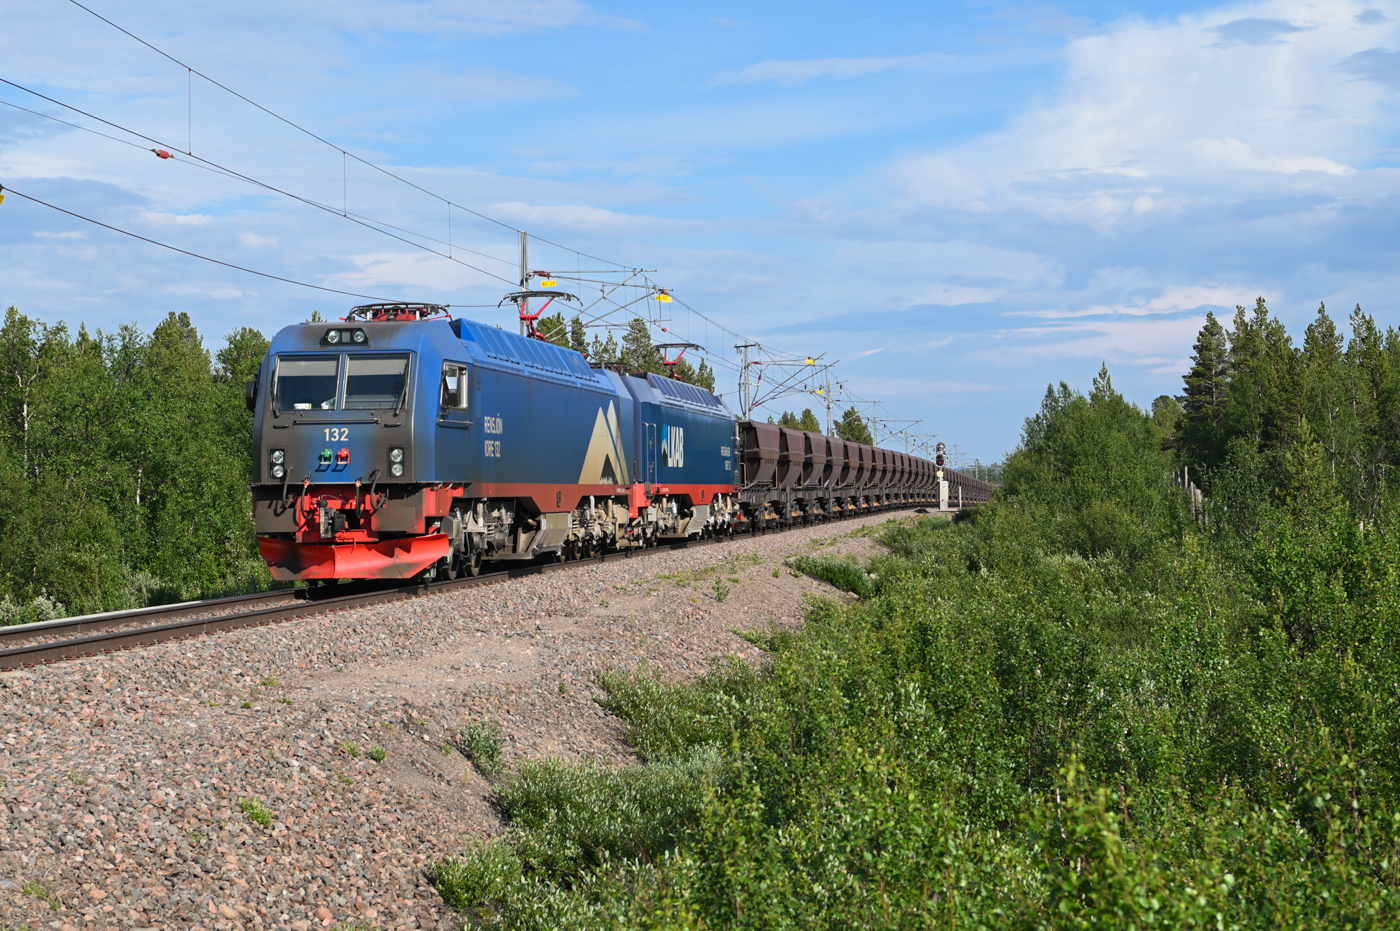 Am 02.07.2022 ist dieser voller Erzzug mit rund 8600 t Gewicht in Richtung Narik unterwegs und erreicht soeben den Bahnübergang bei Rautas. Das mit den ca. 20 Zügen am Tag transportierte Erz macht rund 50% des gesamten schwedischen Güterverkehrs aus (bezogen auf das Gewicht).
